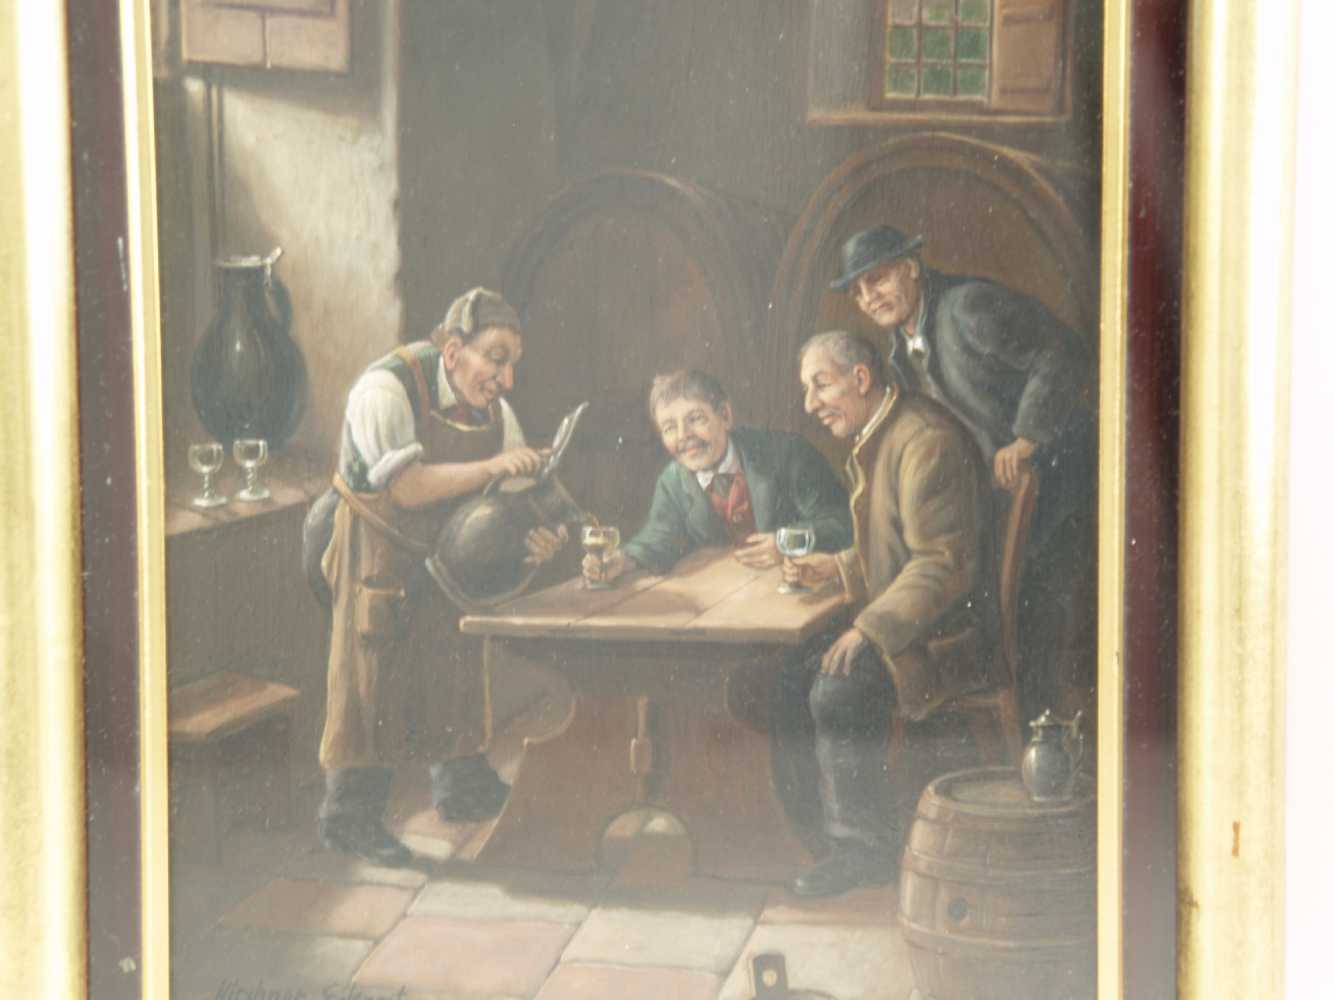 Kirchner, Eckart (1887-1960)- "Wein-Wonnen", Wirtshausszene, Öl/Holz,unter Glas gerahmt,li. unten - Image 2 of 3